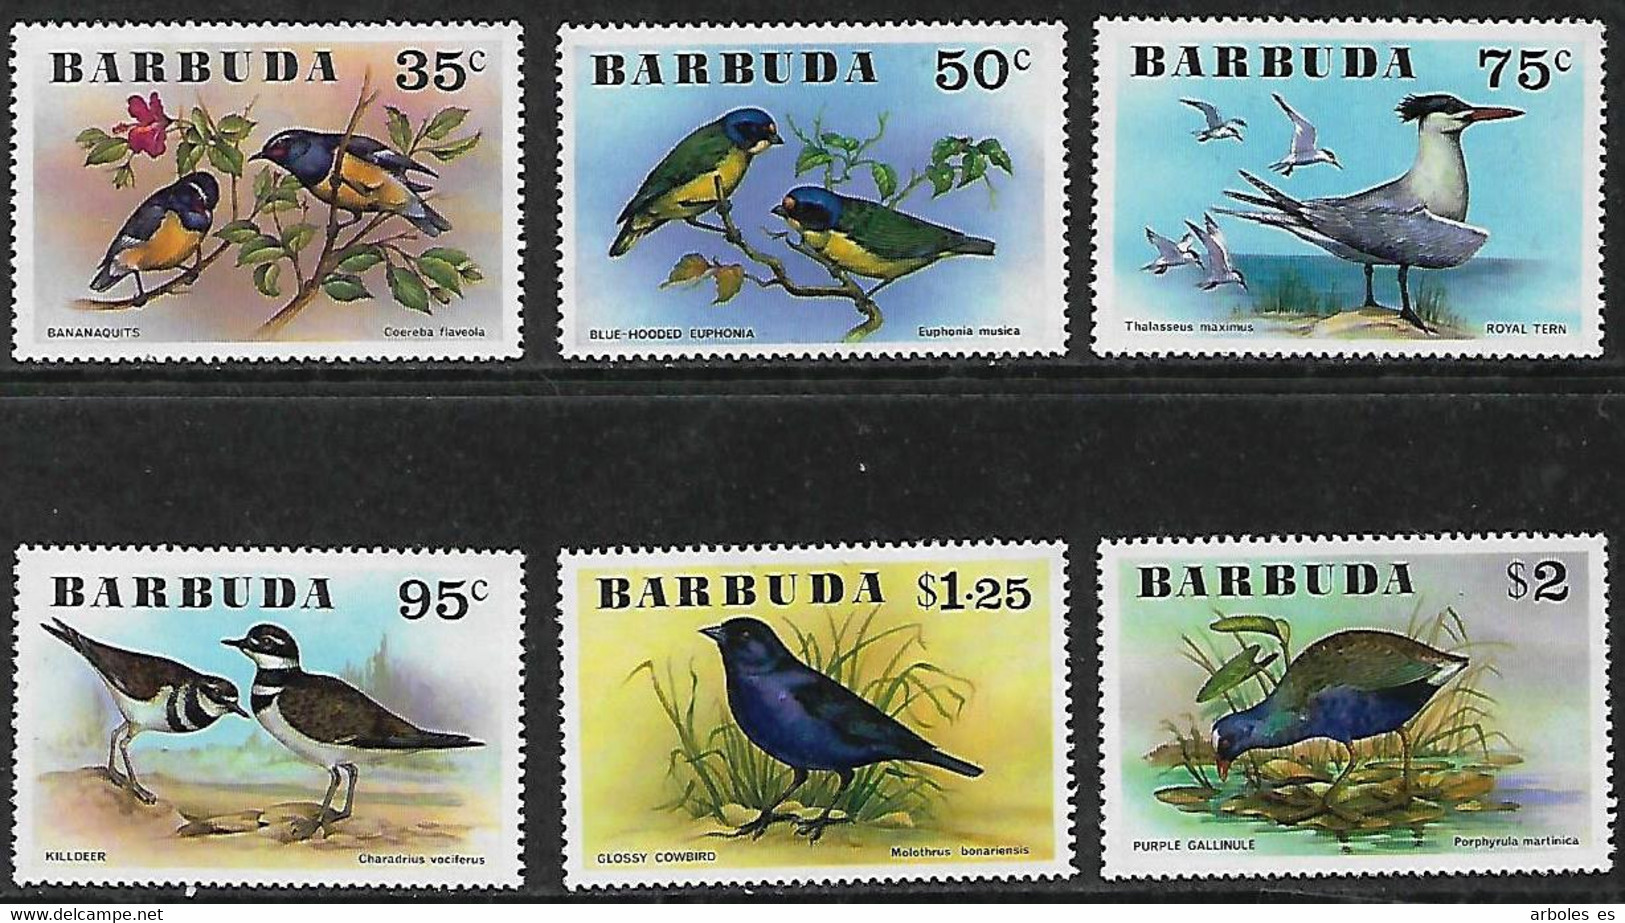 BARBUDA - PAJAROS - AÑO 1976 - Nº CATALOGO YVERT 0251-56 - NUEVOS - Barbuda (...-1981)